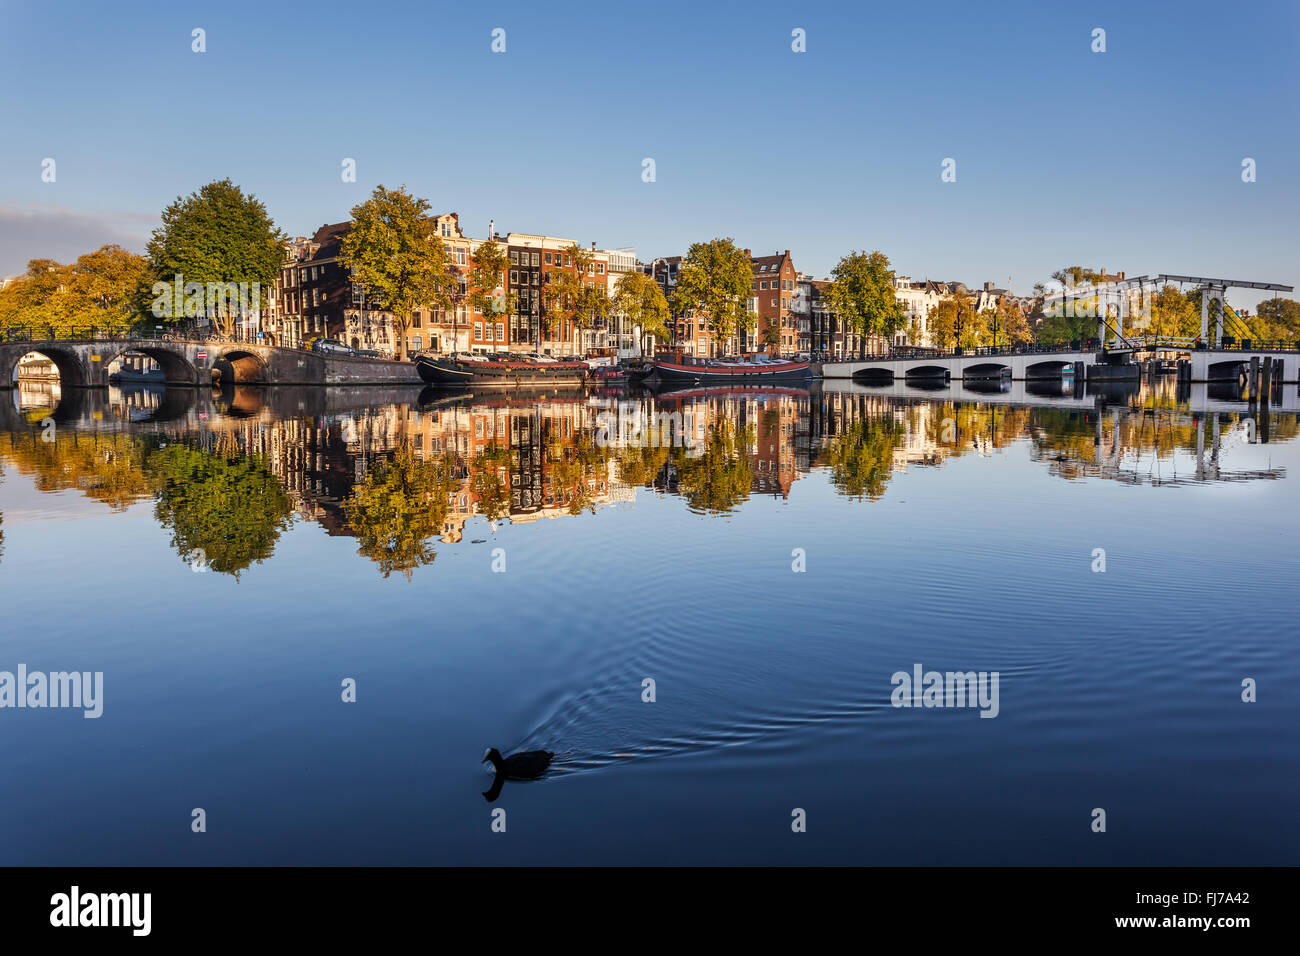 Reflet d'arbres et maisons en eau calme de la rivière Amstel, Amsterdam, Netherdlands. Banque D'Images